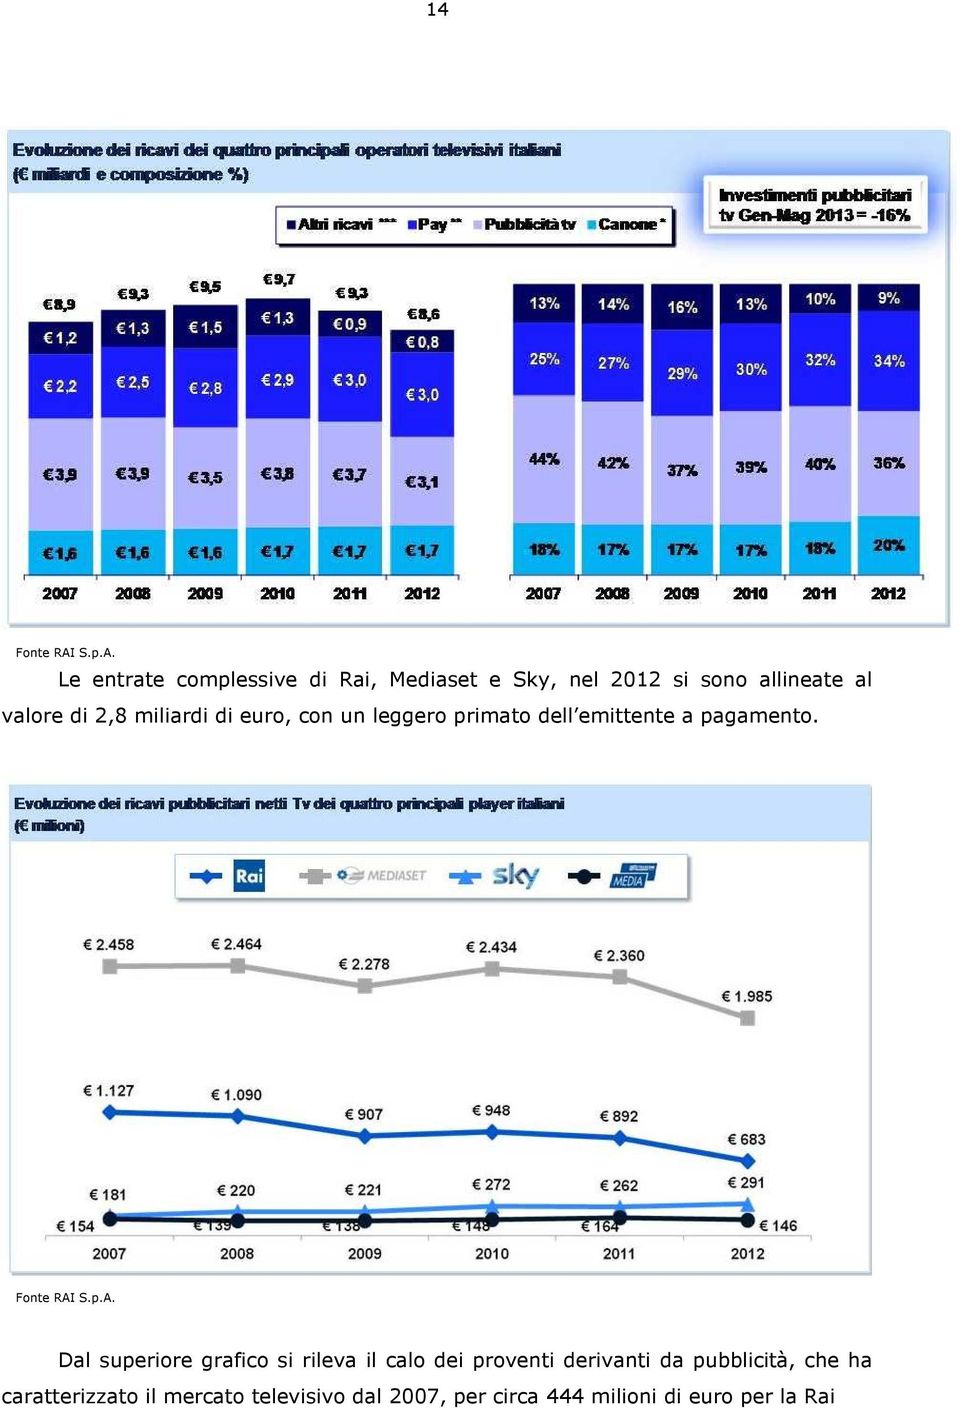 Le entrate complessive di Rai, Mediaset e Sky, nel 2012 si sono allineate al valore di 2,8